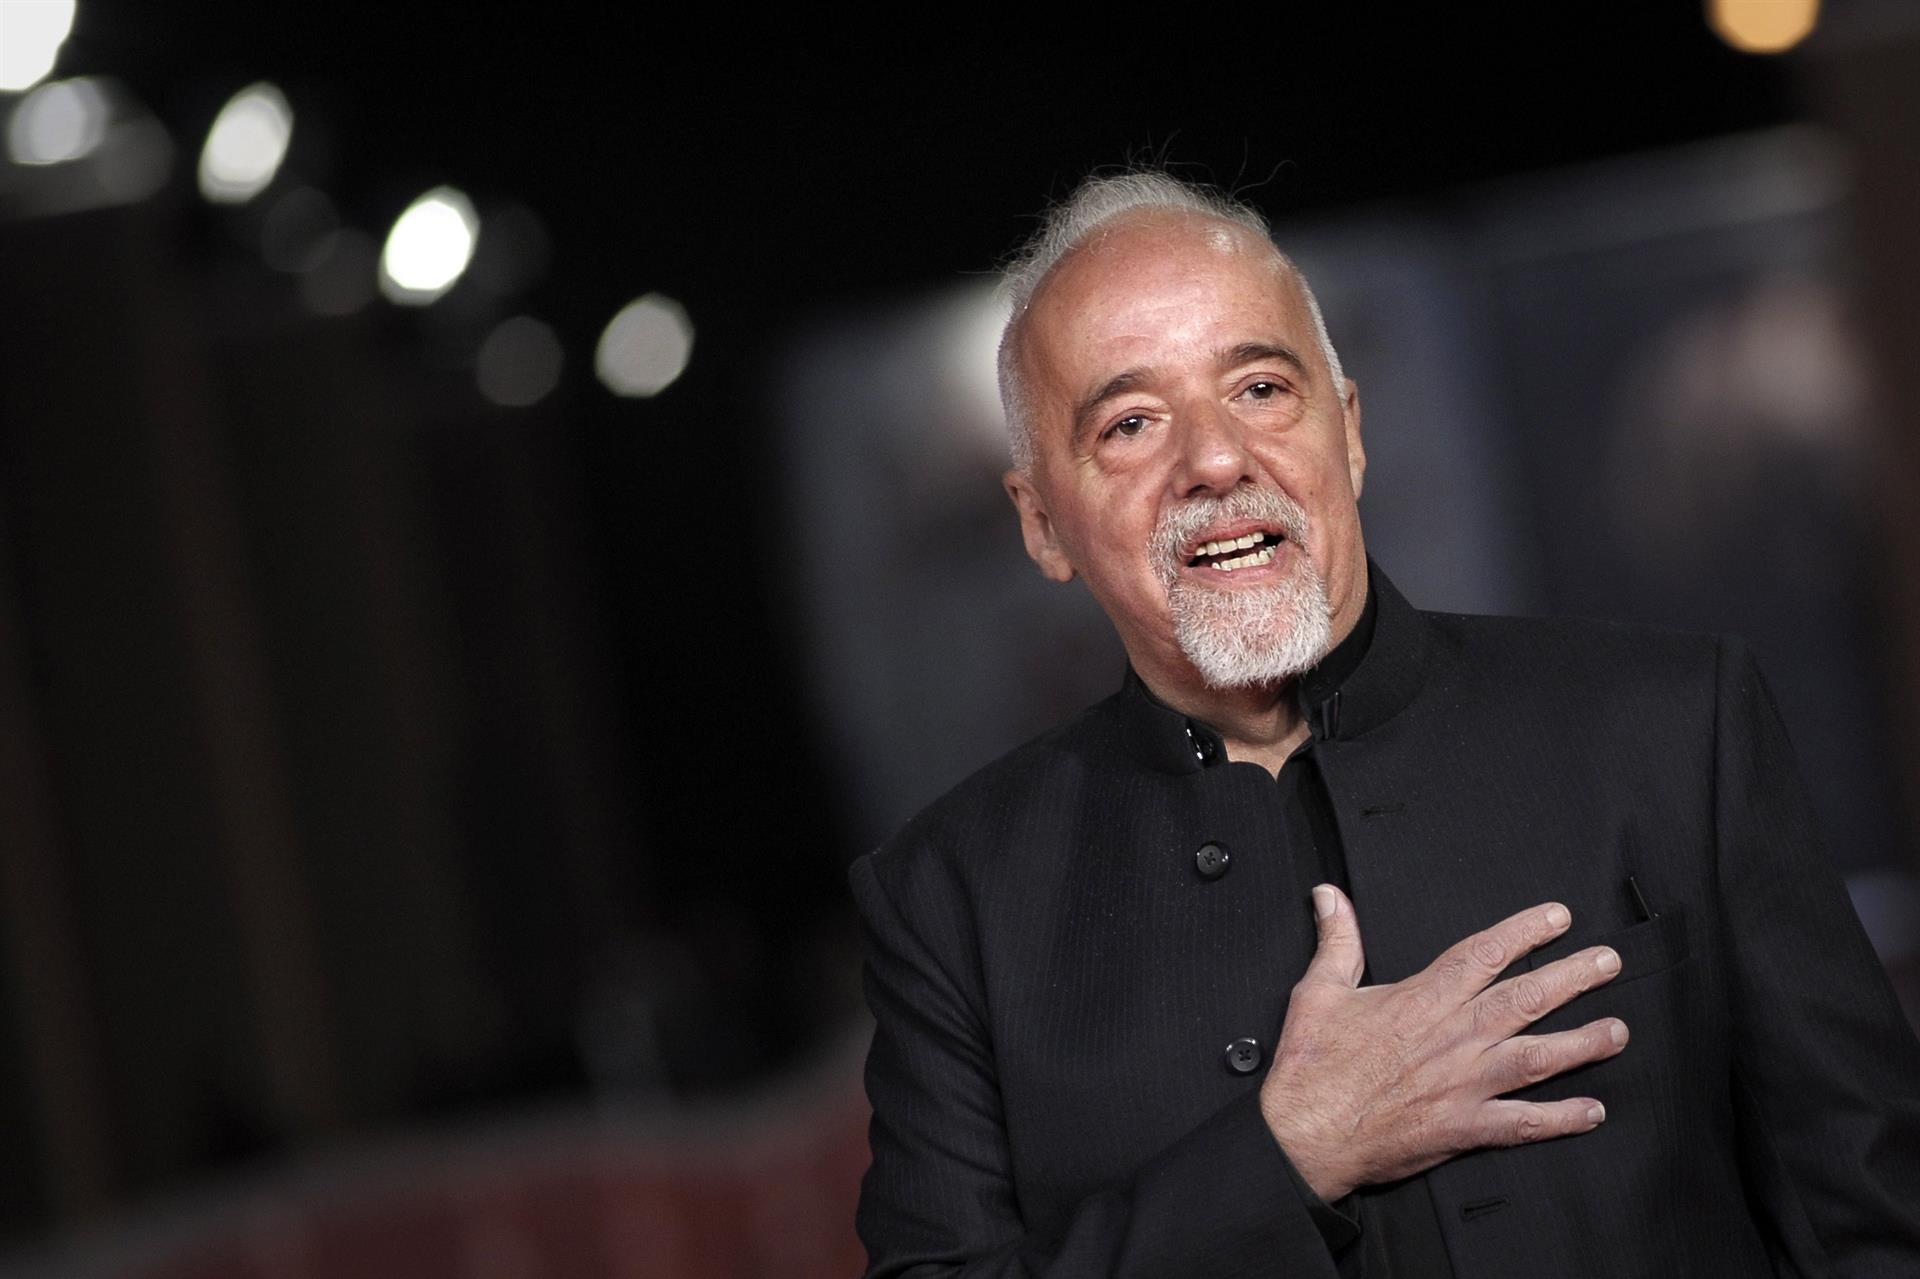 El escritor brasileño Paulo Coelho, autor de "El alquimista", cumple 75 años